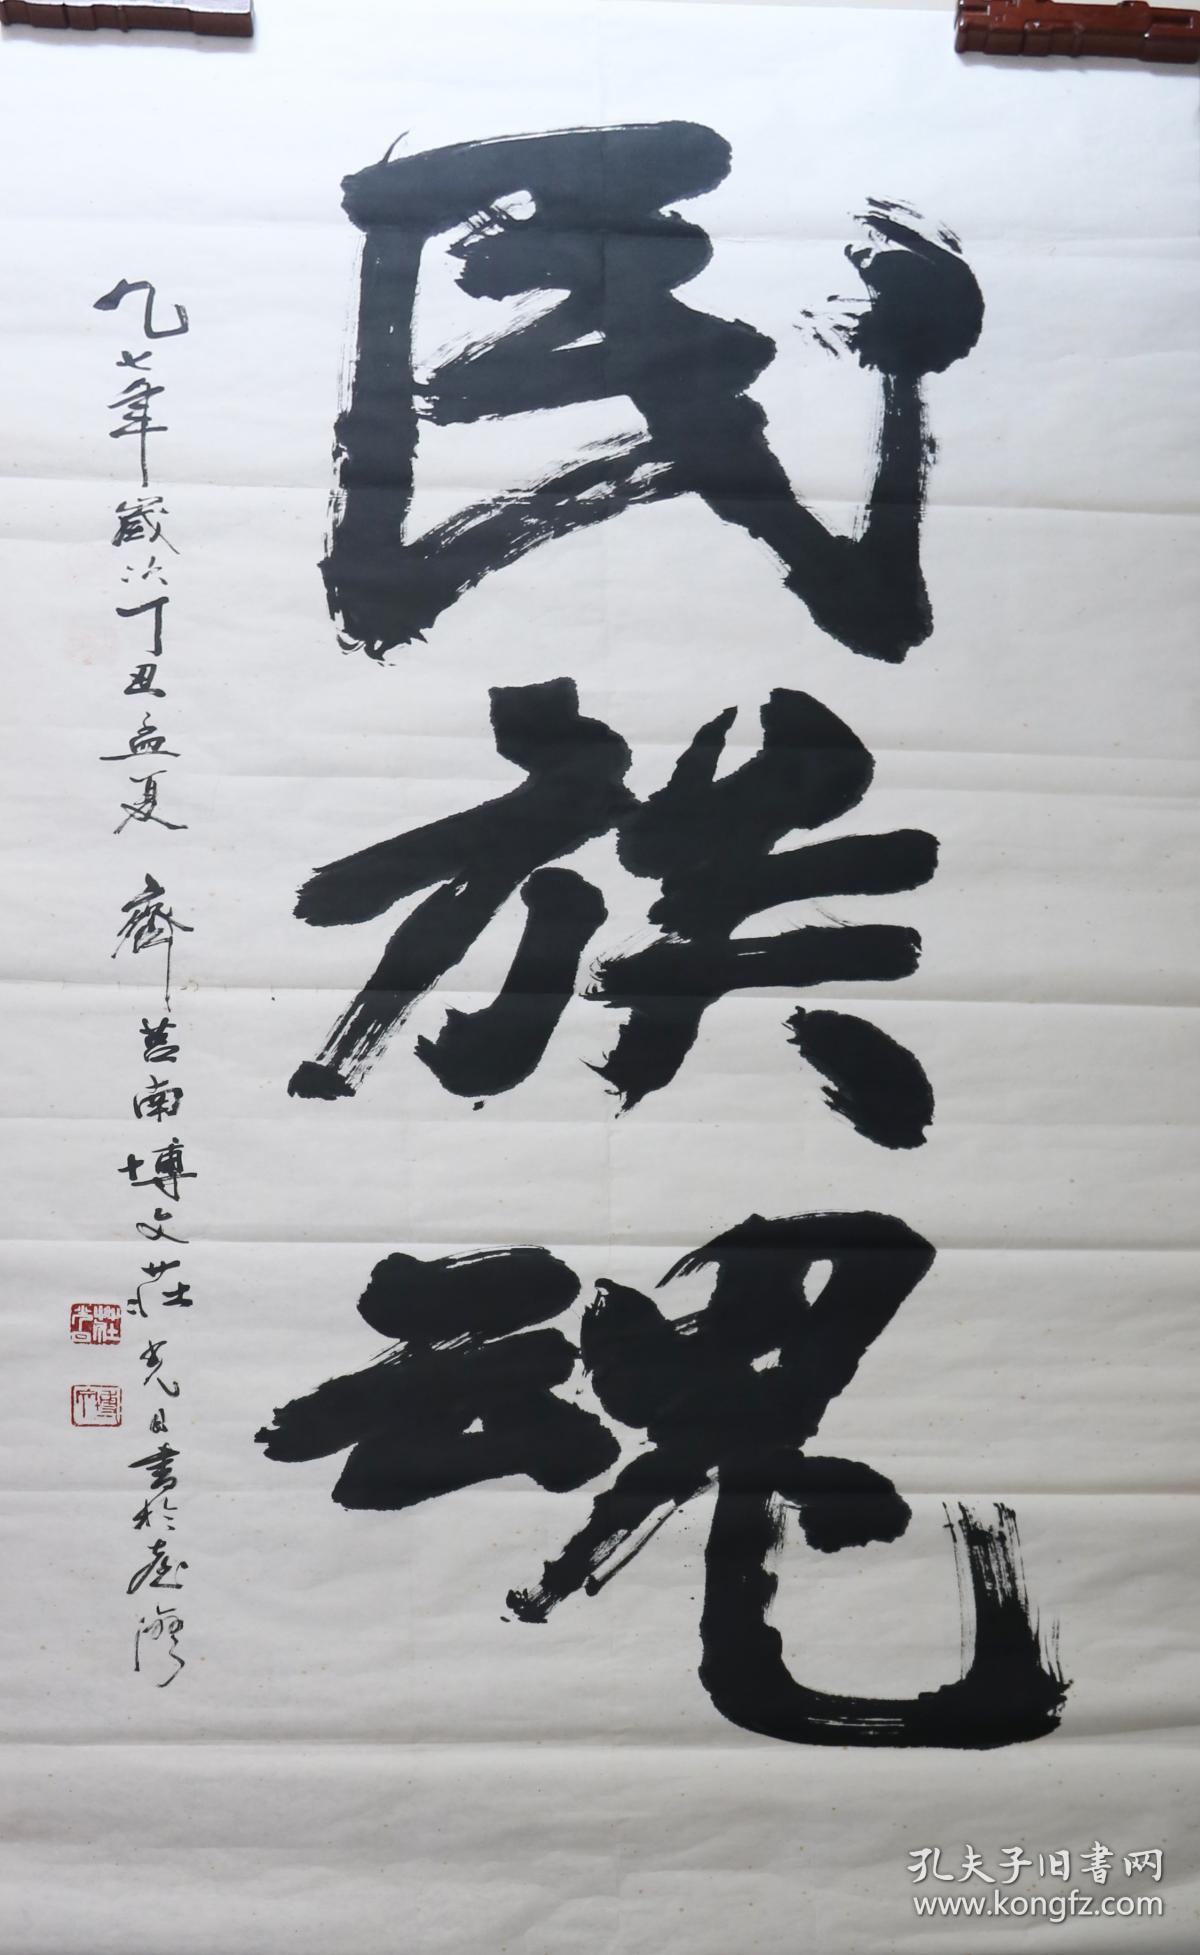 庄光日 真迹 【r1468】大尺寸书法,台湾著名书法家《民族魂》